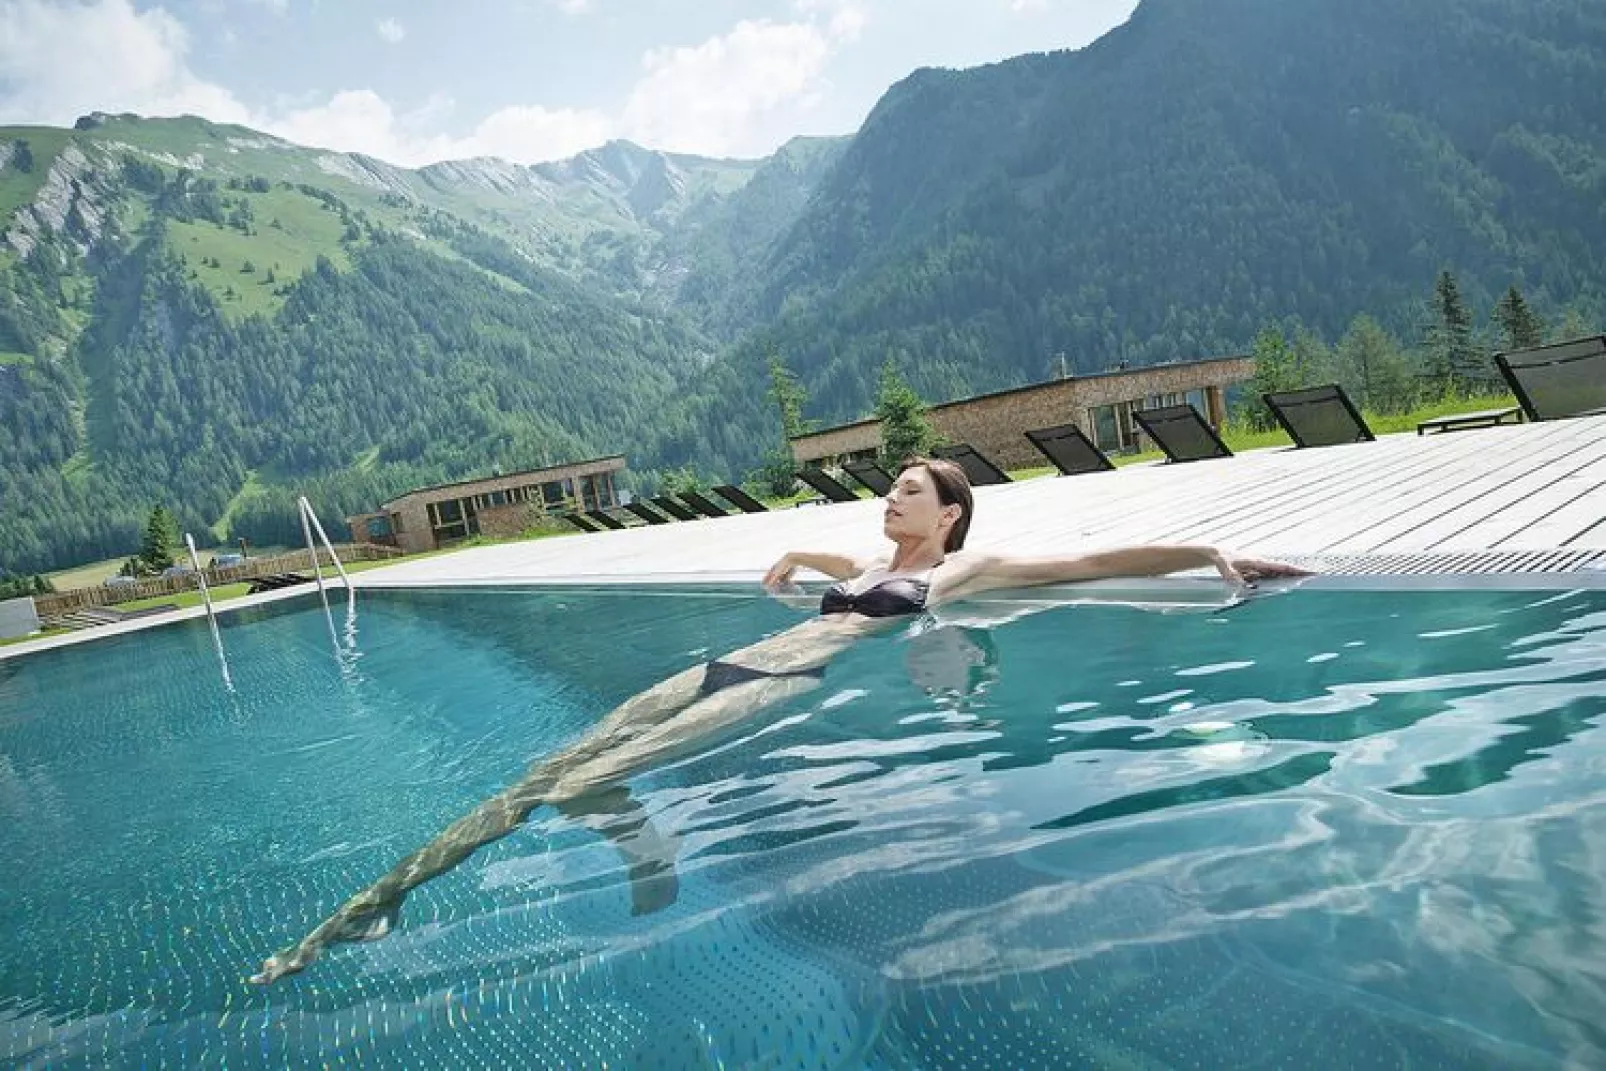 Gradonna Mountain Resort - Klassik - 4 Personen-Zwembad